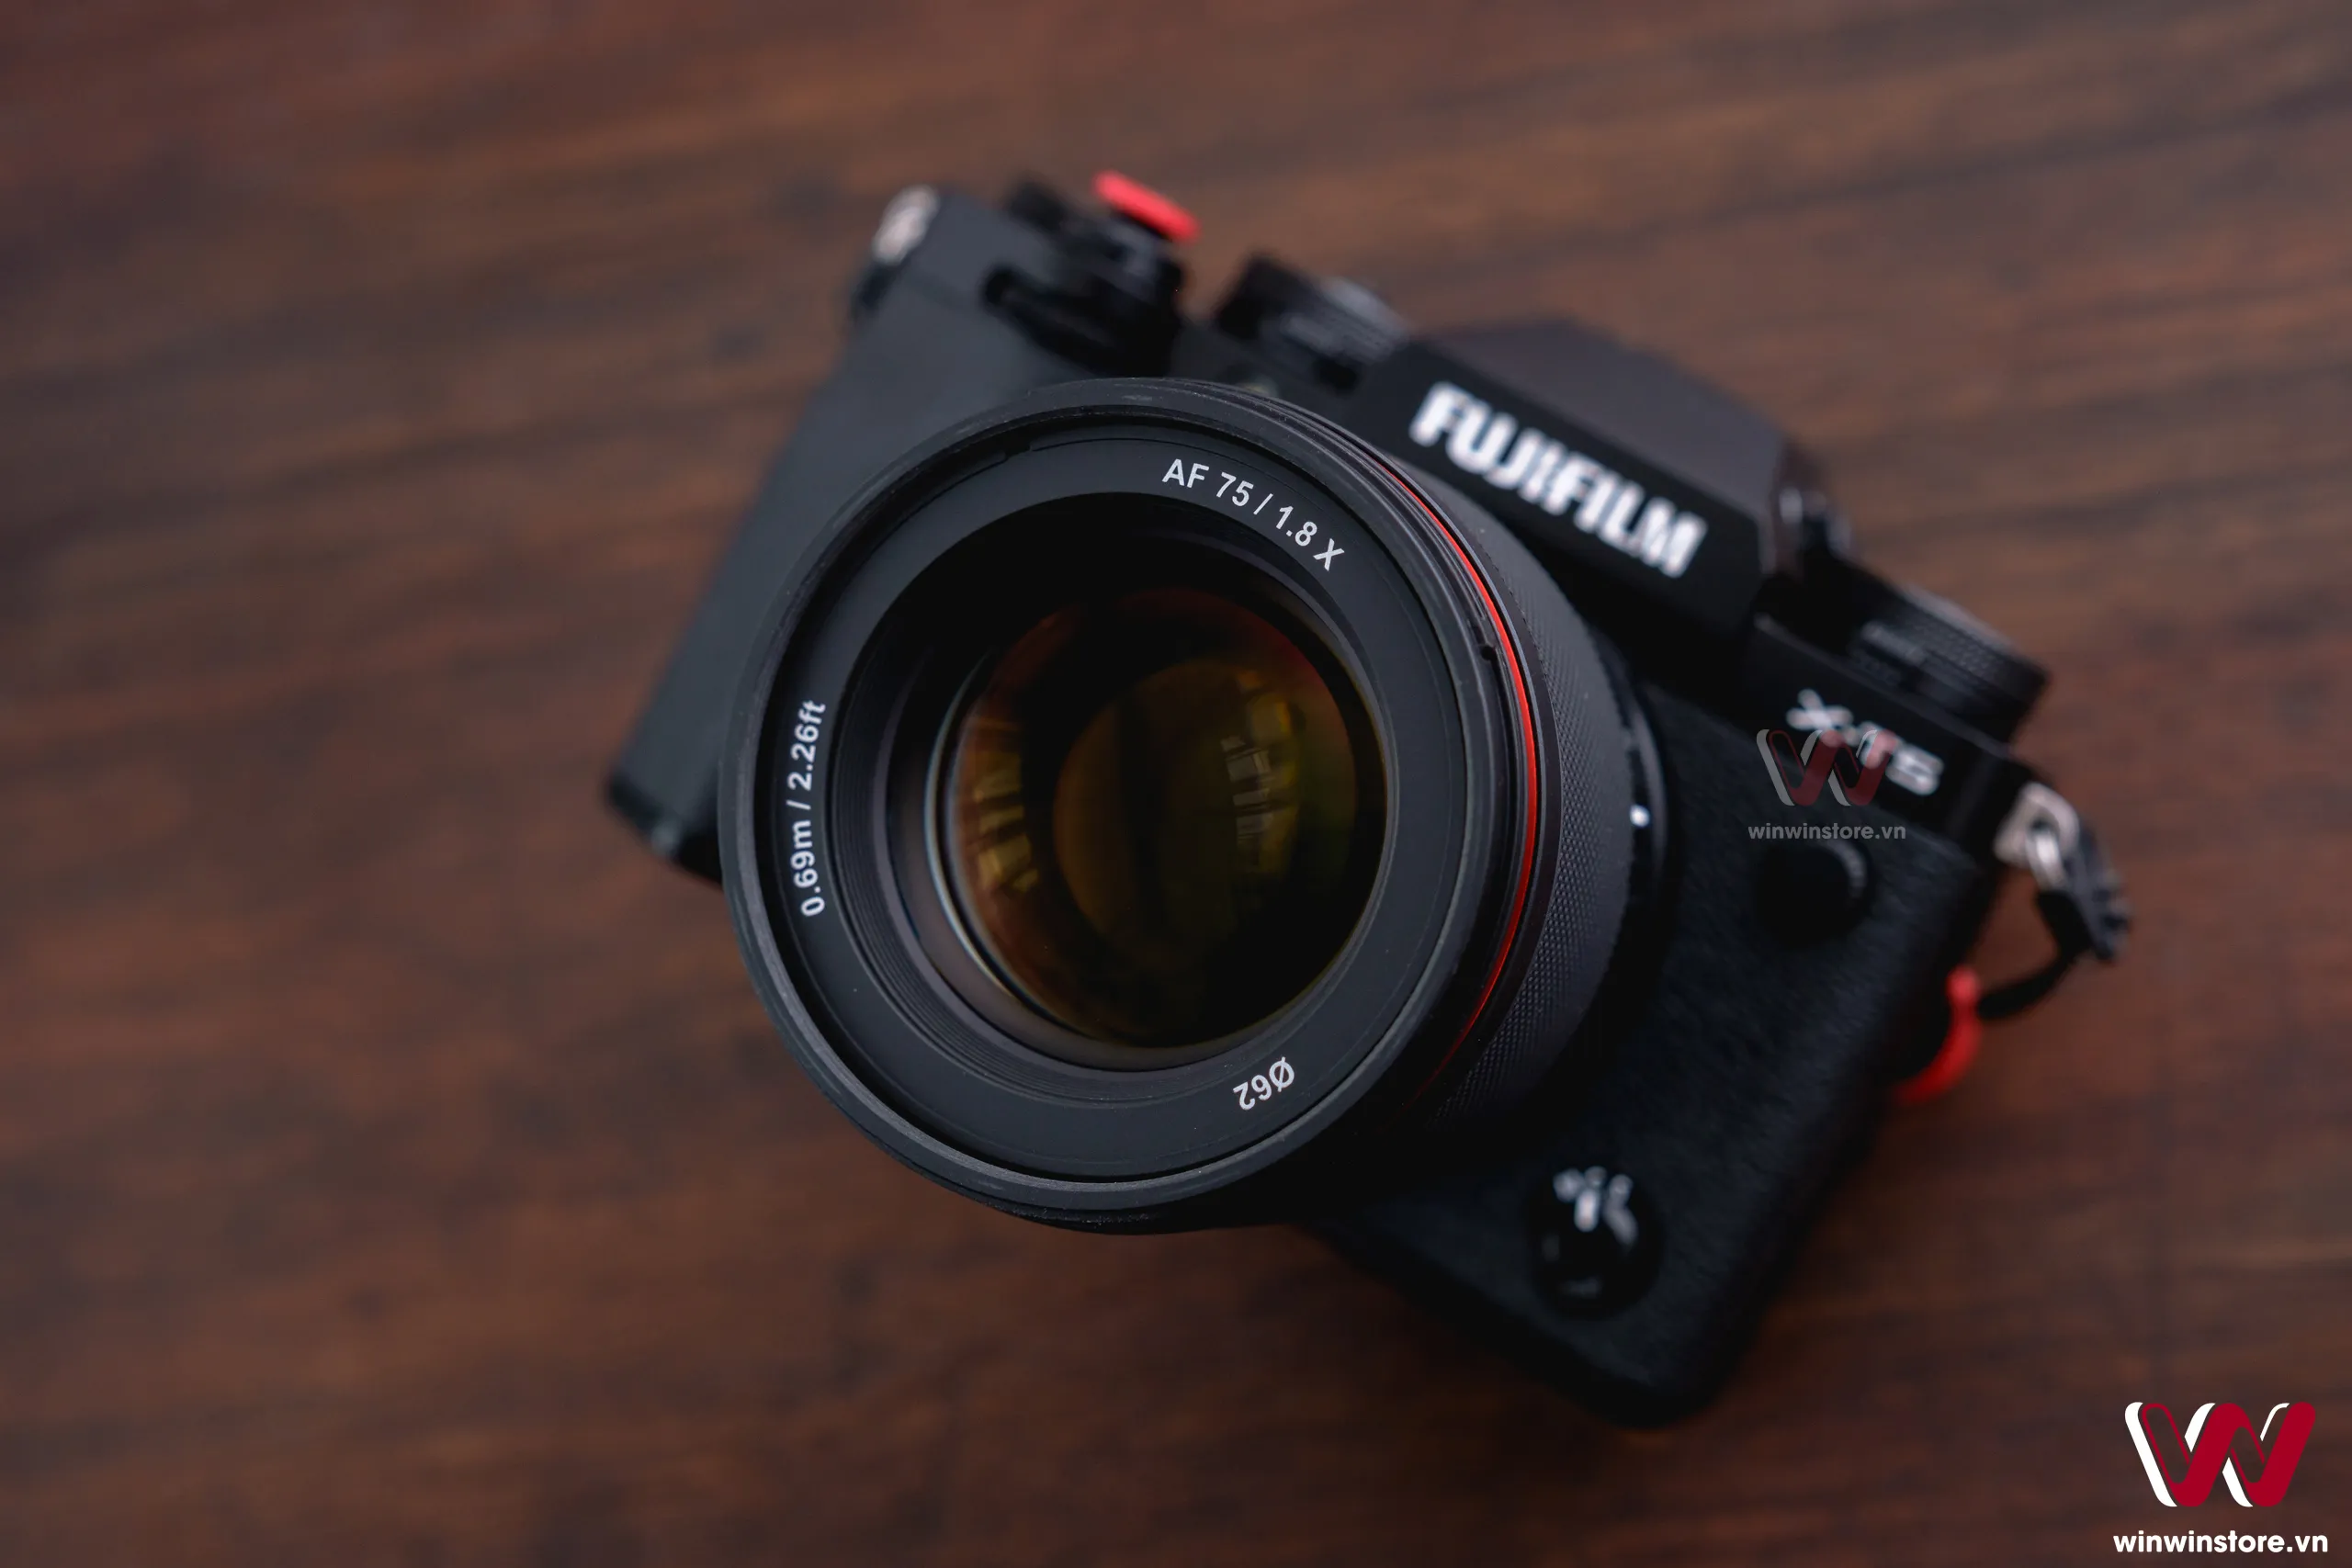 Trên tay ống kính Samyang 75mm F1.8 cho Fujifilm X: Gọn nhẹ, chống chịu thời tiết, giá 9.9 triệu